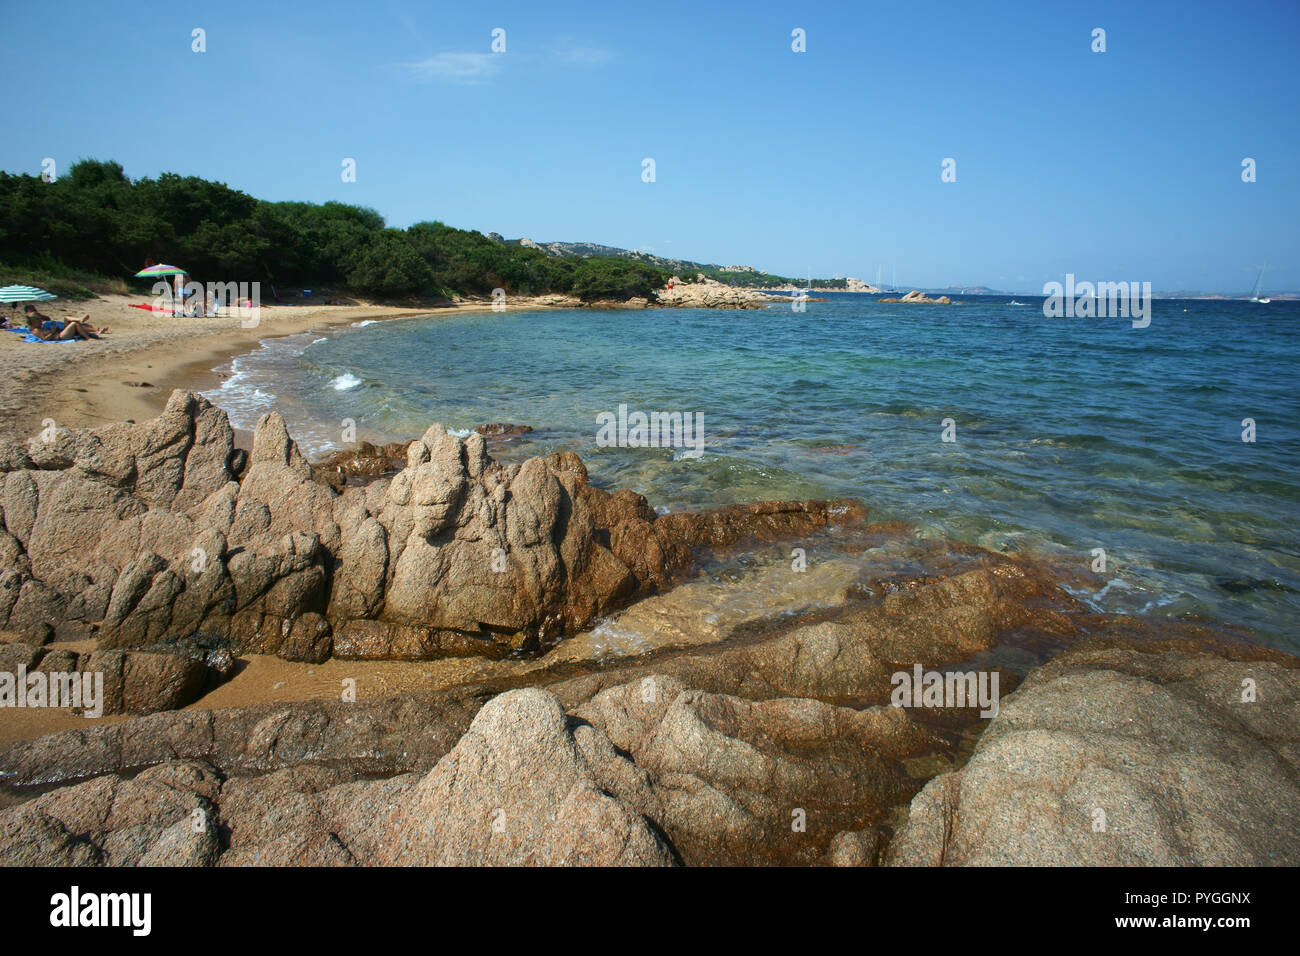 Liscia vacca beach, costa smeralda, Sardinia, italy Stock Photo